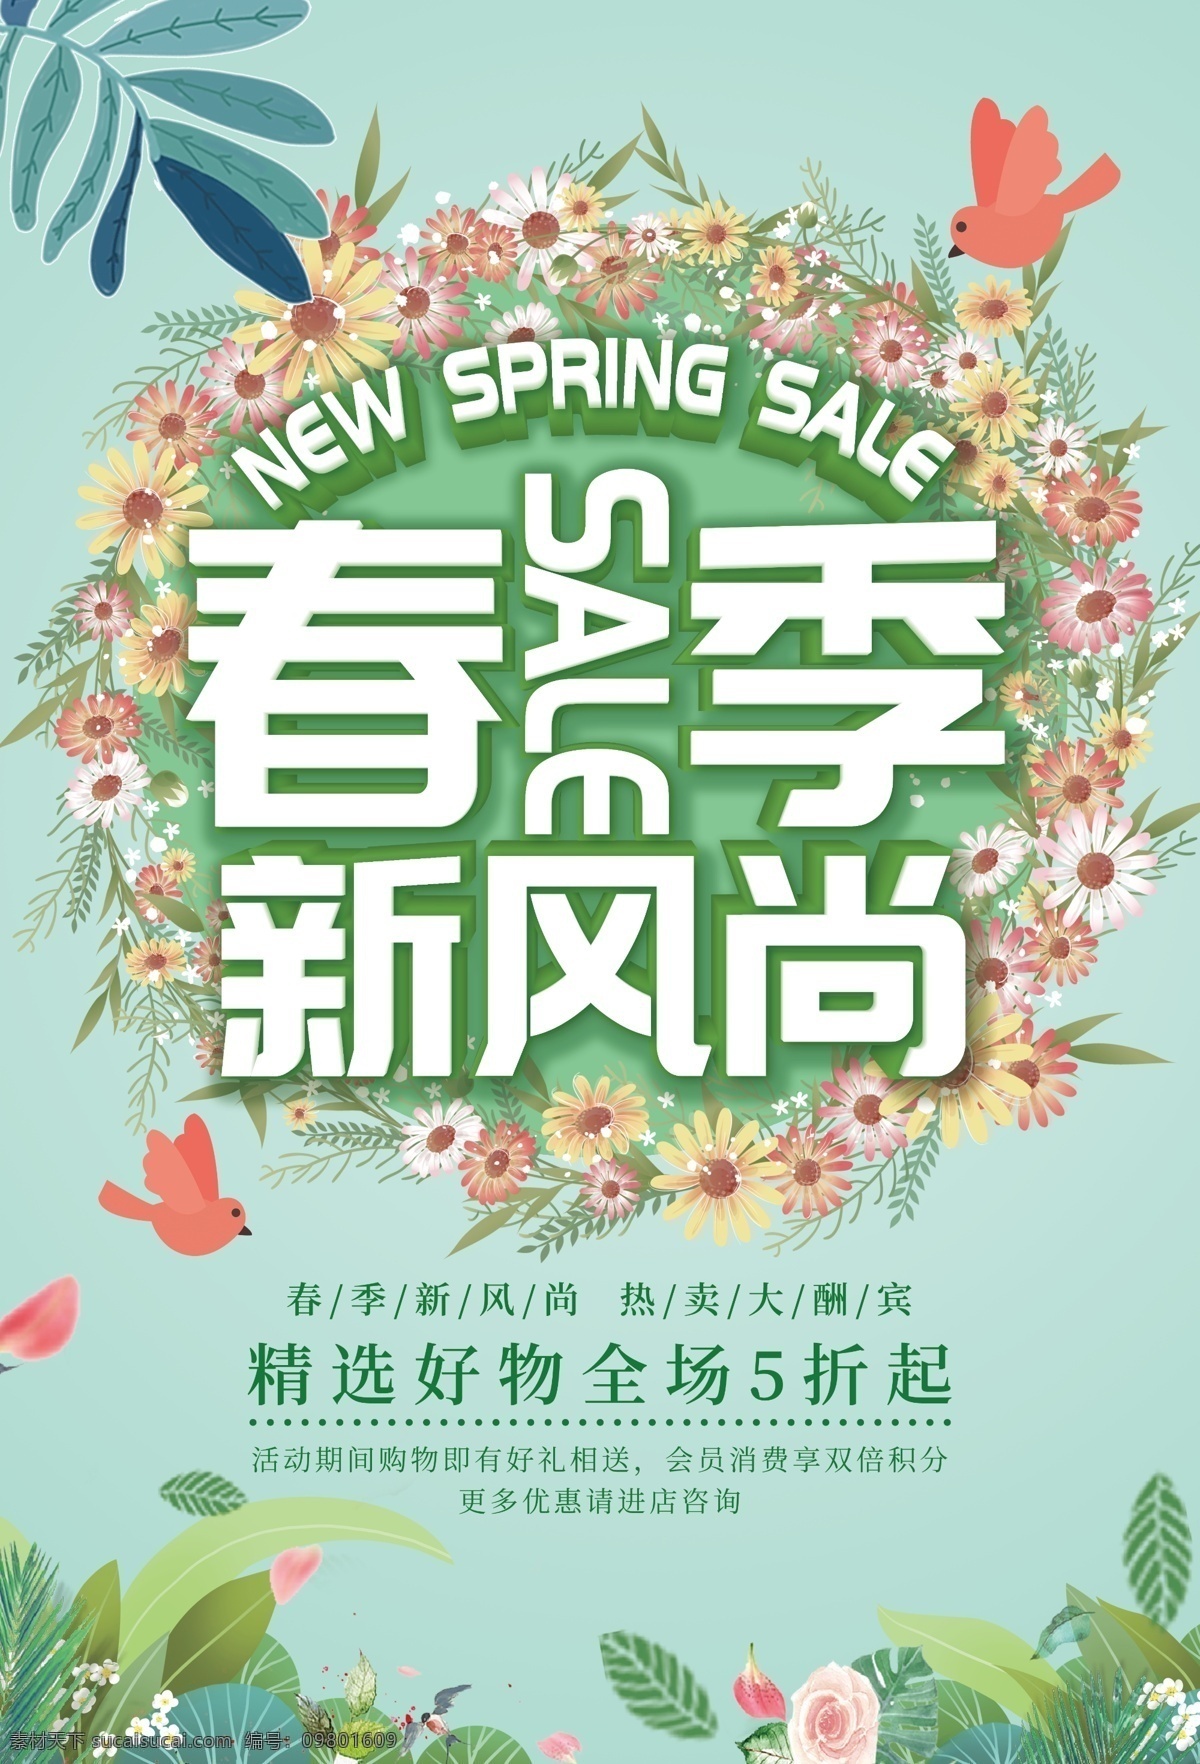 春季 新风尚 热卖 促销 绿色海报 海报素材